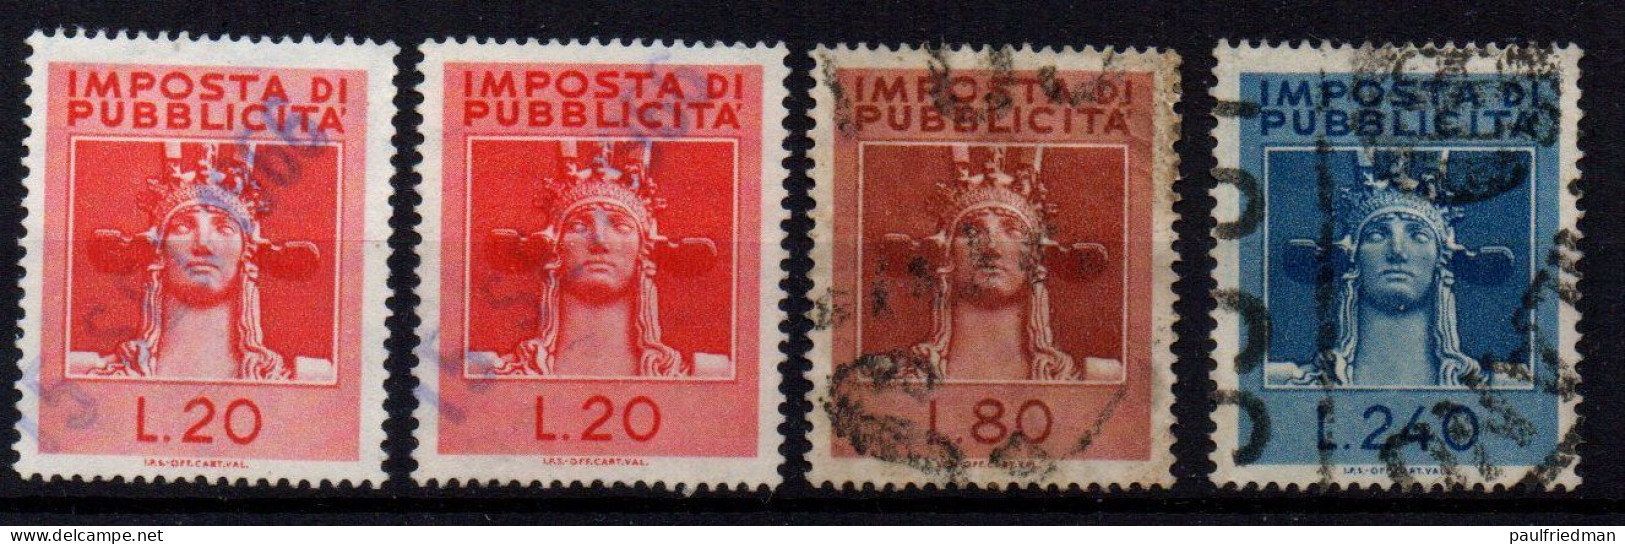 Repubblica 1964 - Marca Imposta Di Pubblicità - Piccolo Lotto - Usati - Steuermarken